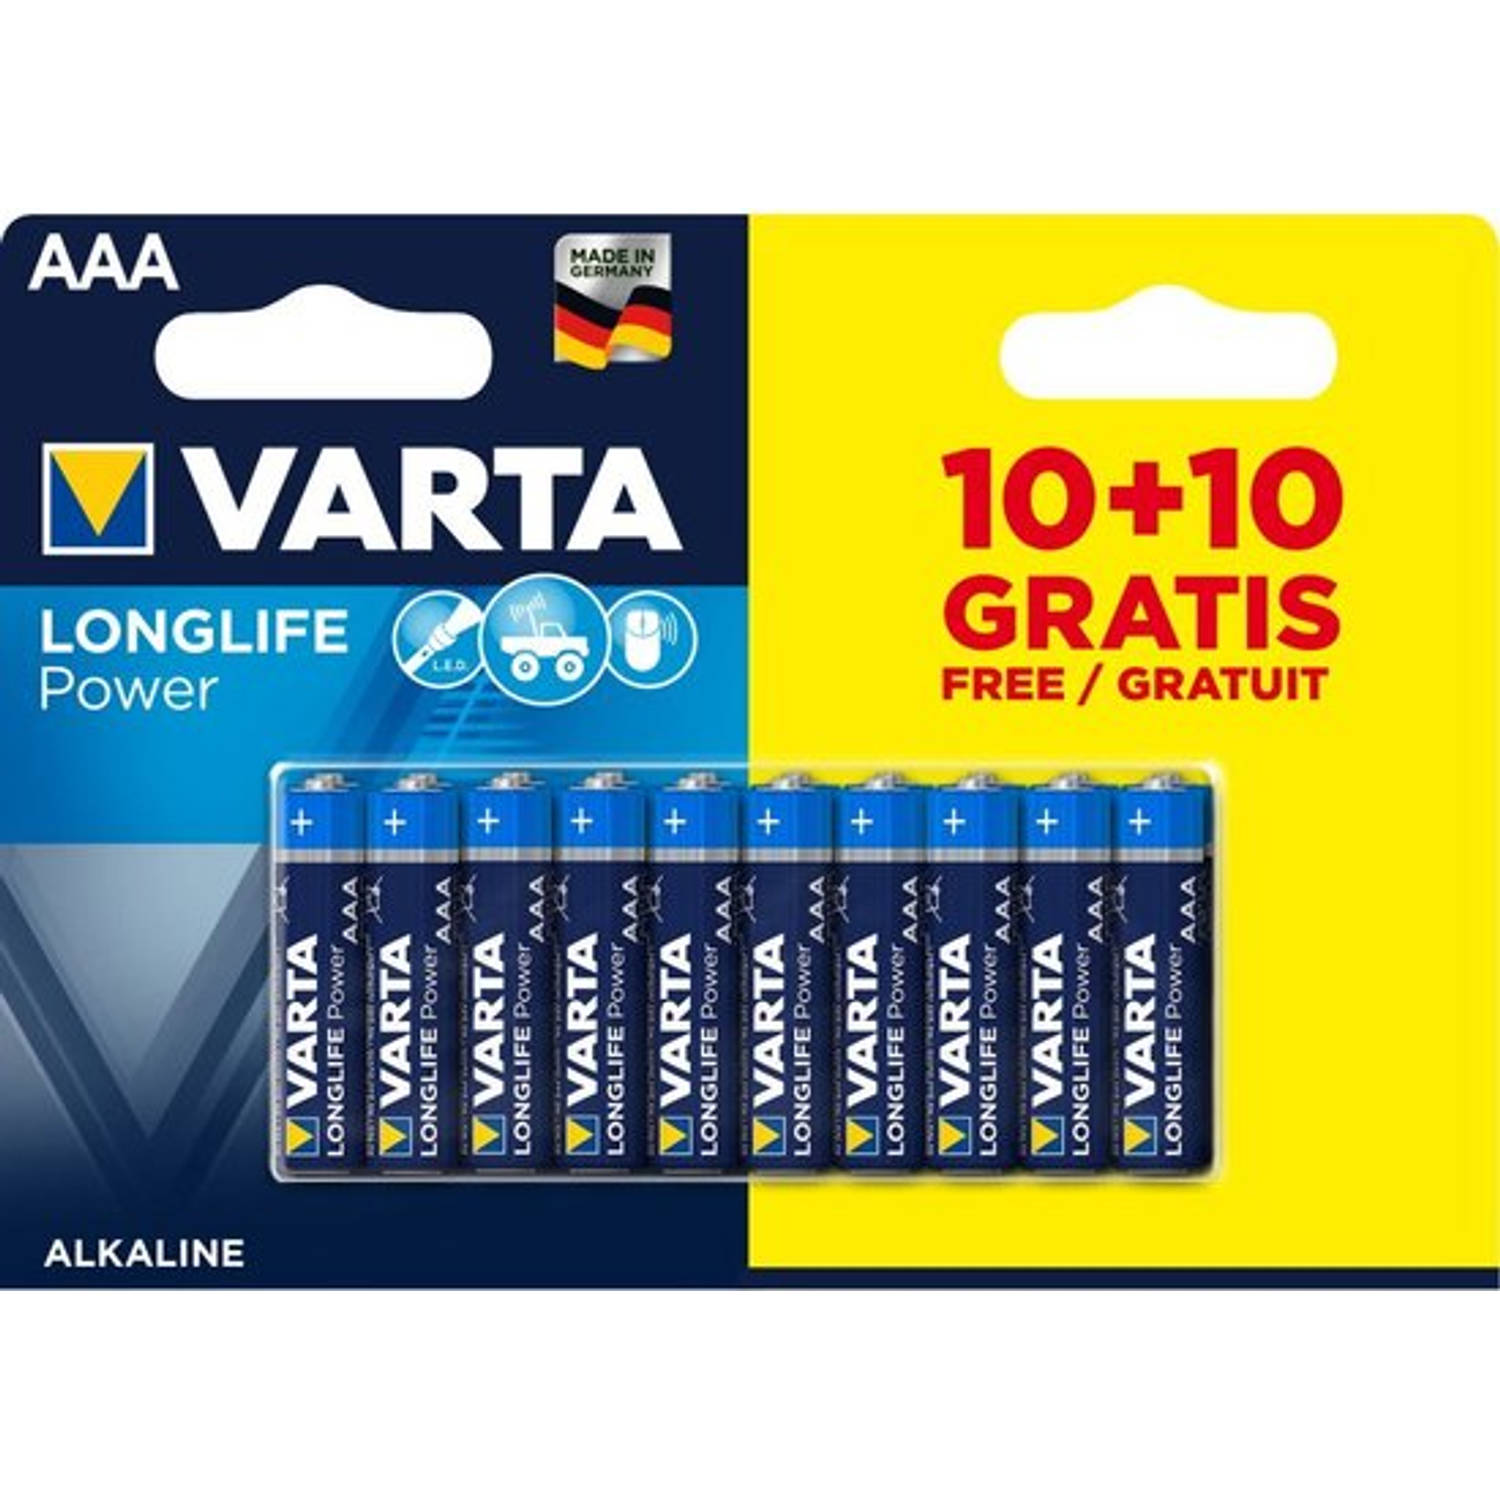 VARTA High Energy AAA 10+10